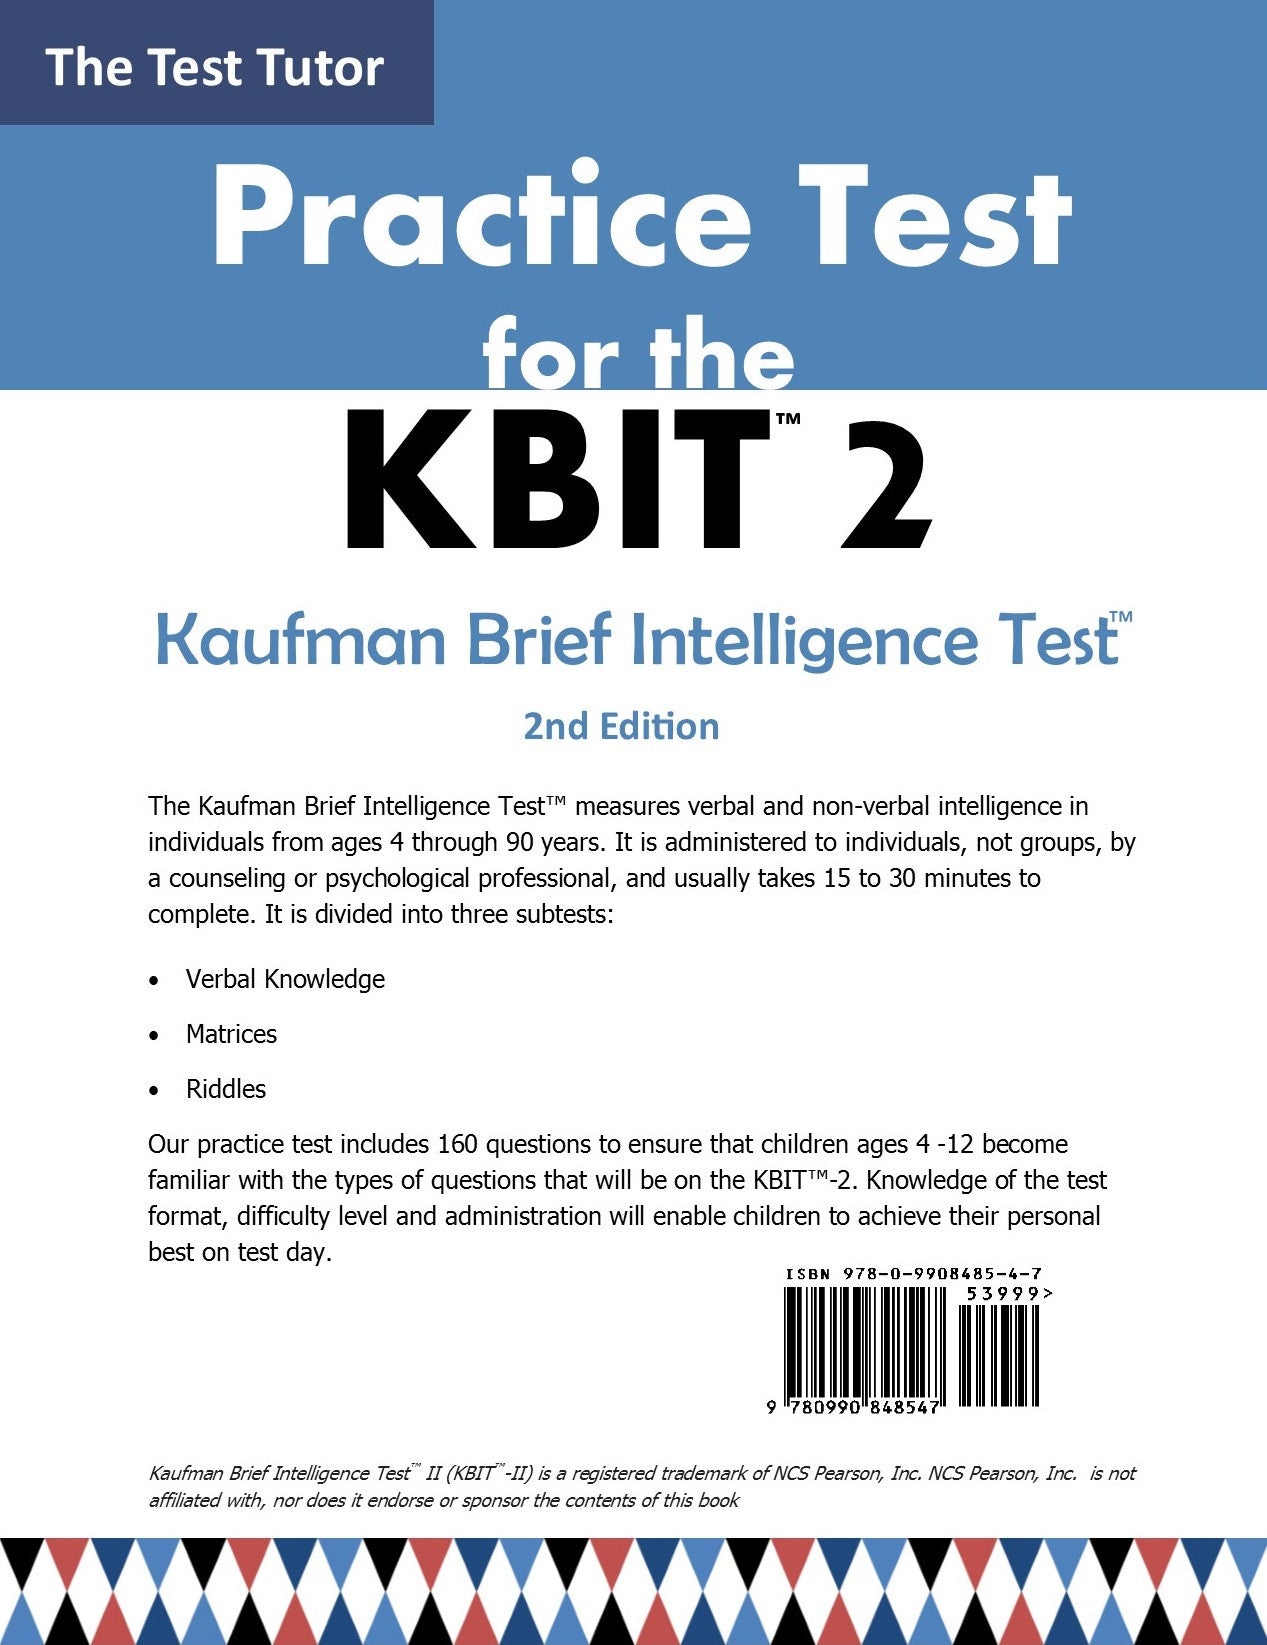 kbit-2-practice-test-the-test-tutor